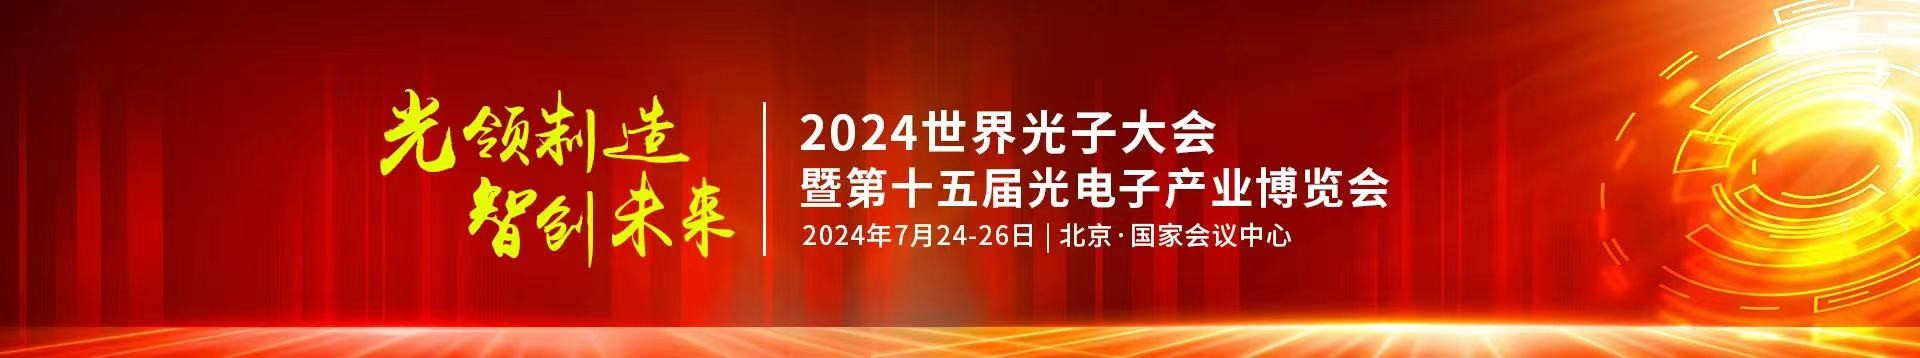 长盈通公司受邀参加2024年第十五届光电子产业博览会